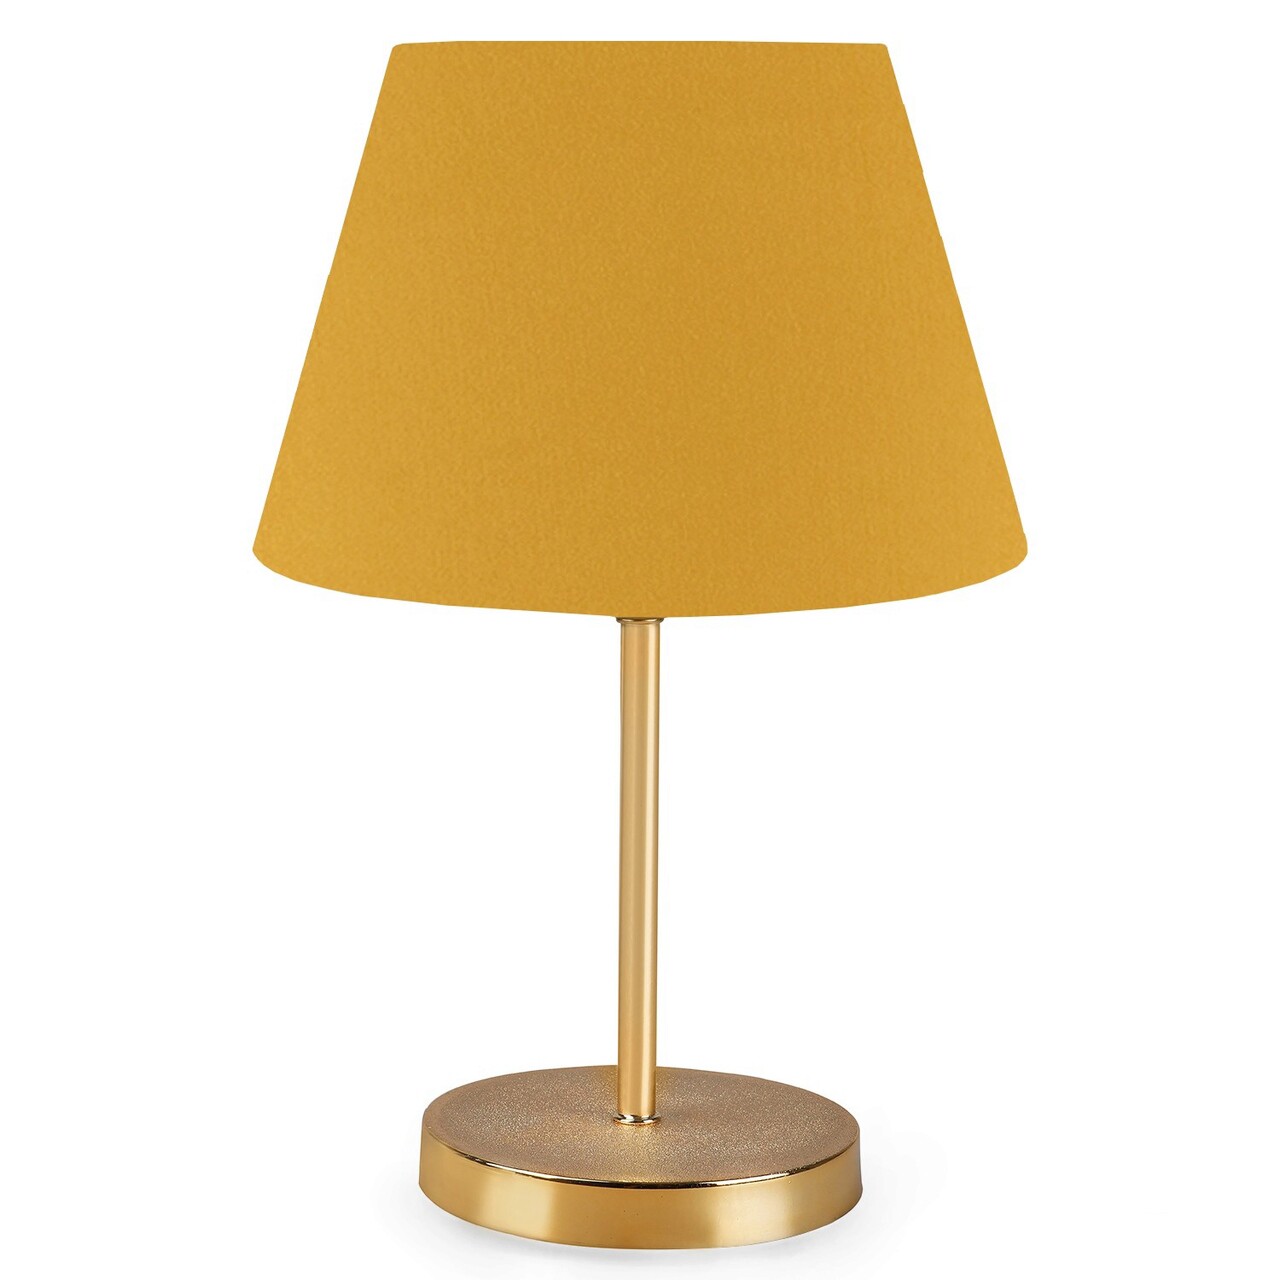 Lampa De Masa, Insignio, 780SGN1860, PVC, Galben